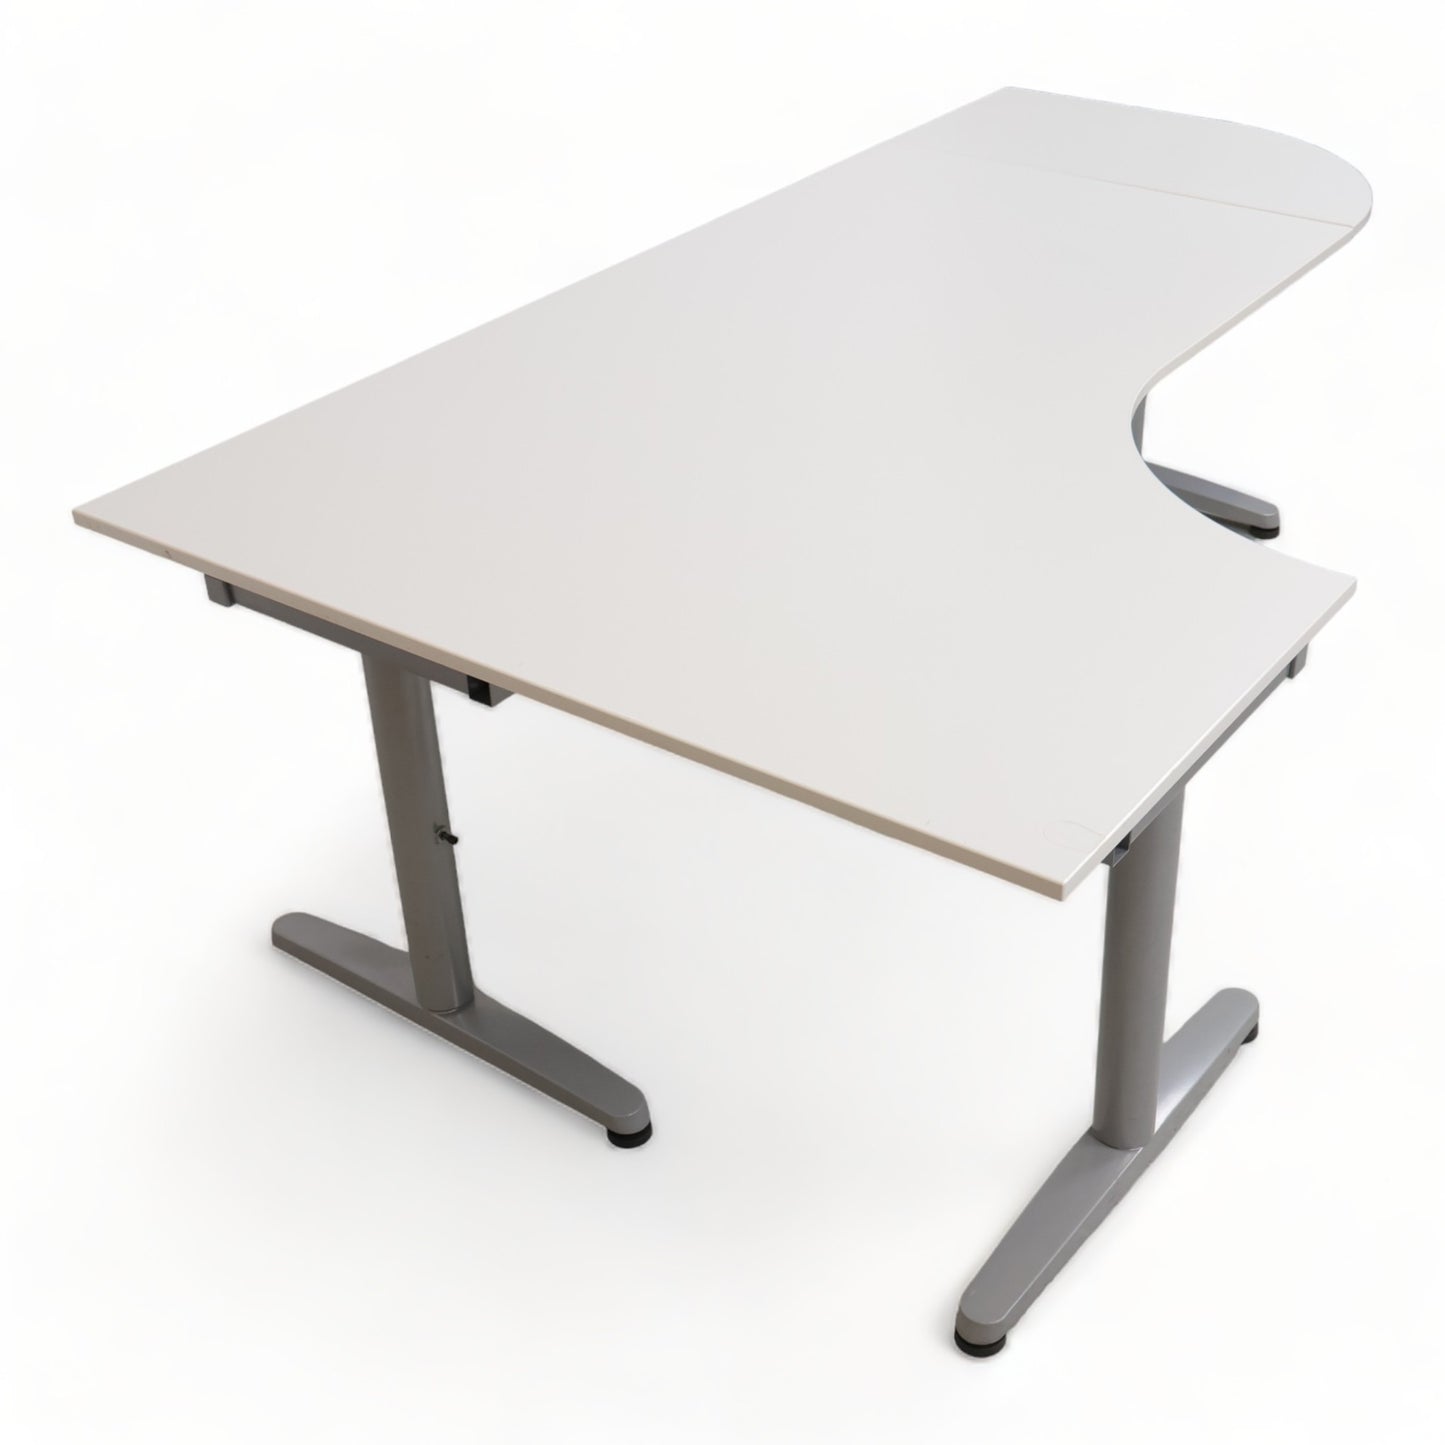 Kvalitetssikret | 200x120 cm, IKEA Galant hjørneskrivebord